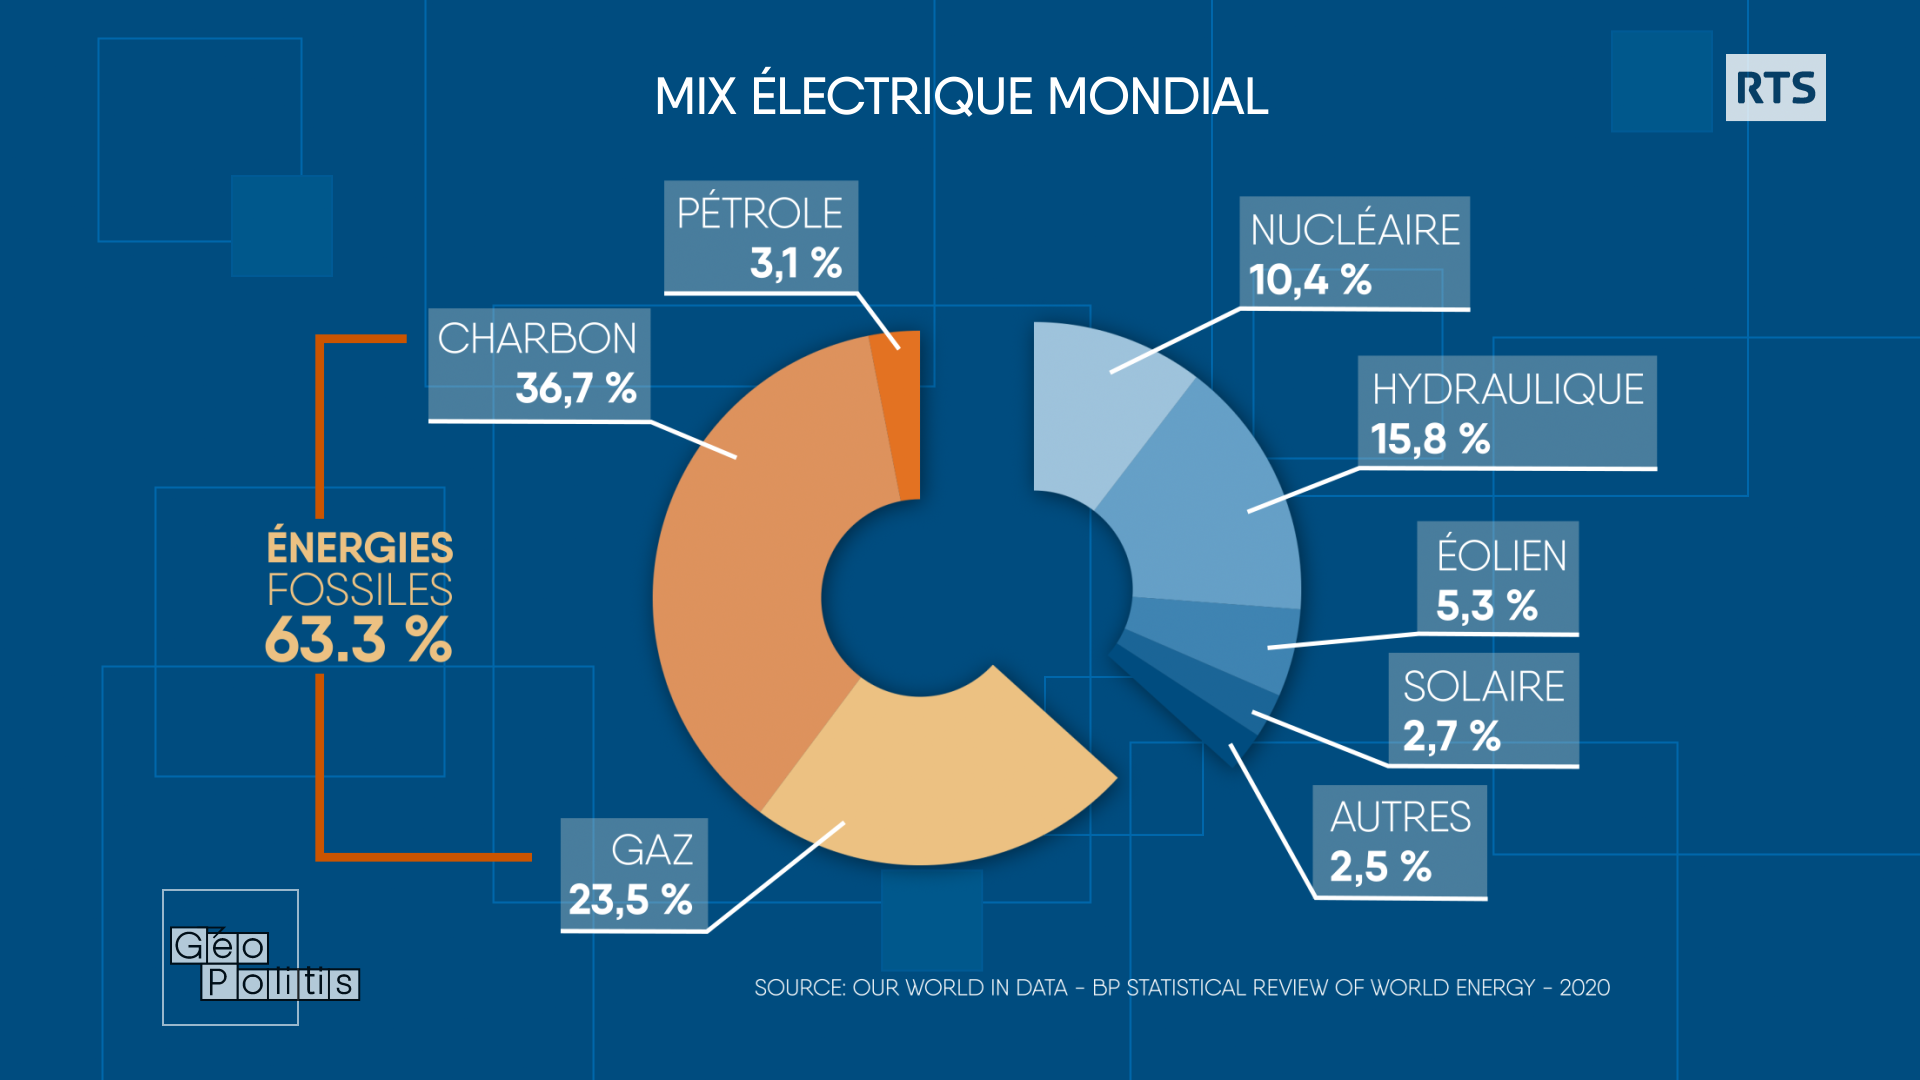 Mix électrique mondial en 2020. [RTS - Géopolitis]